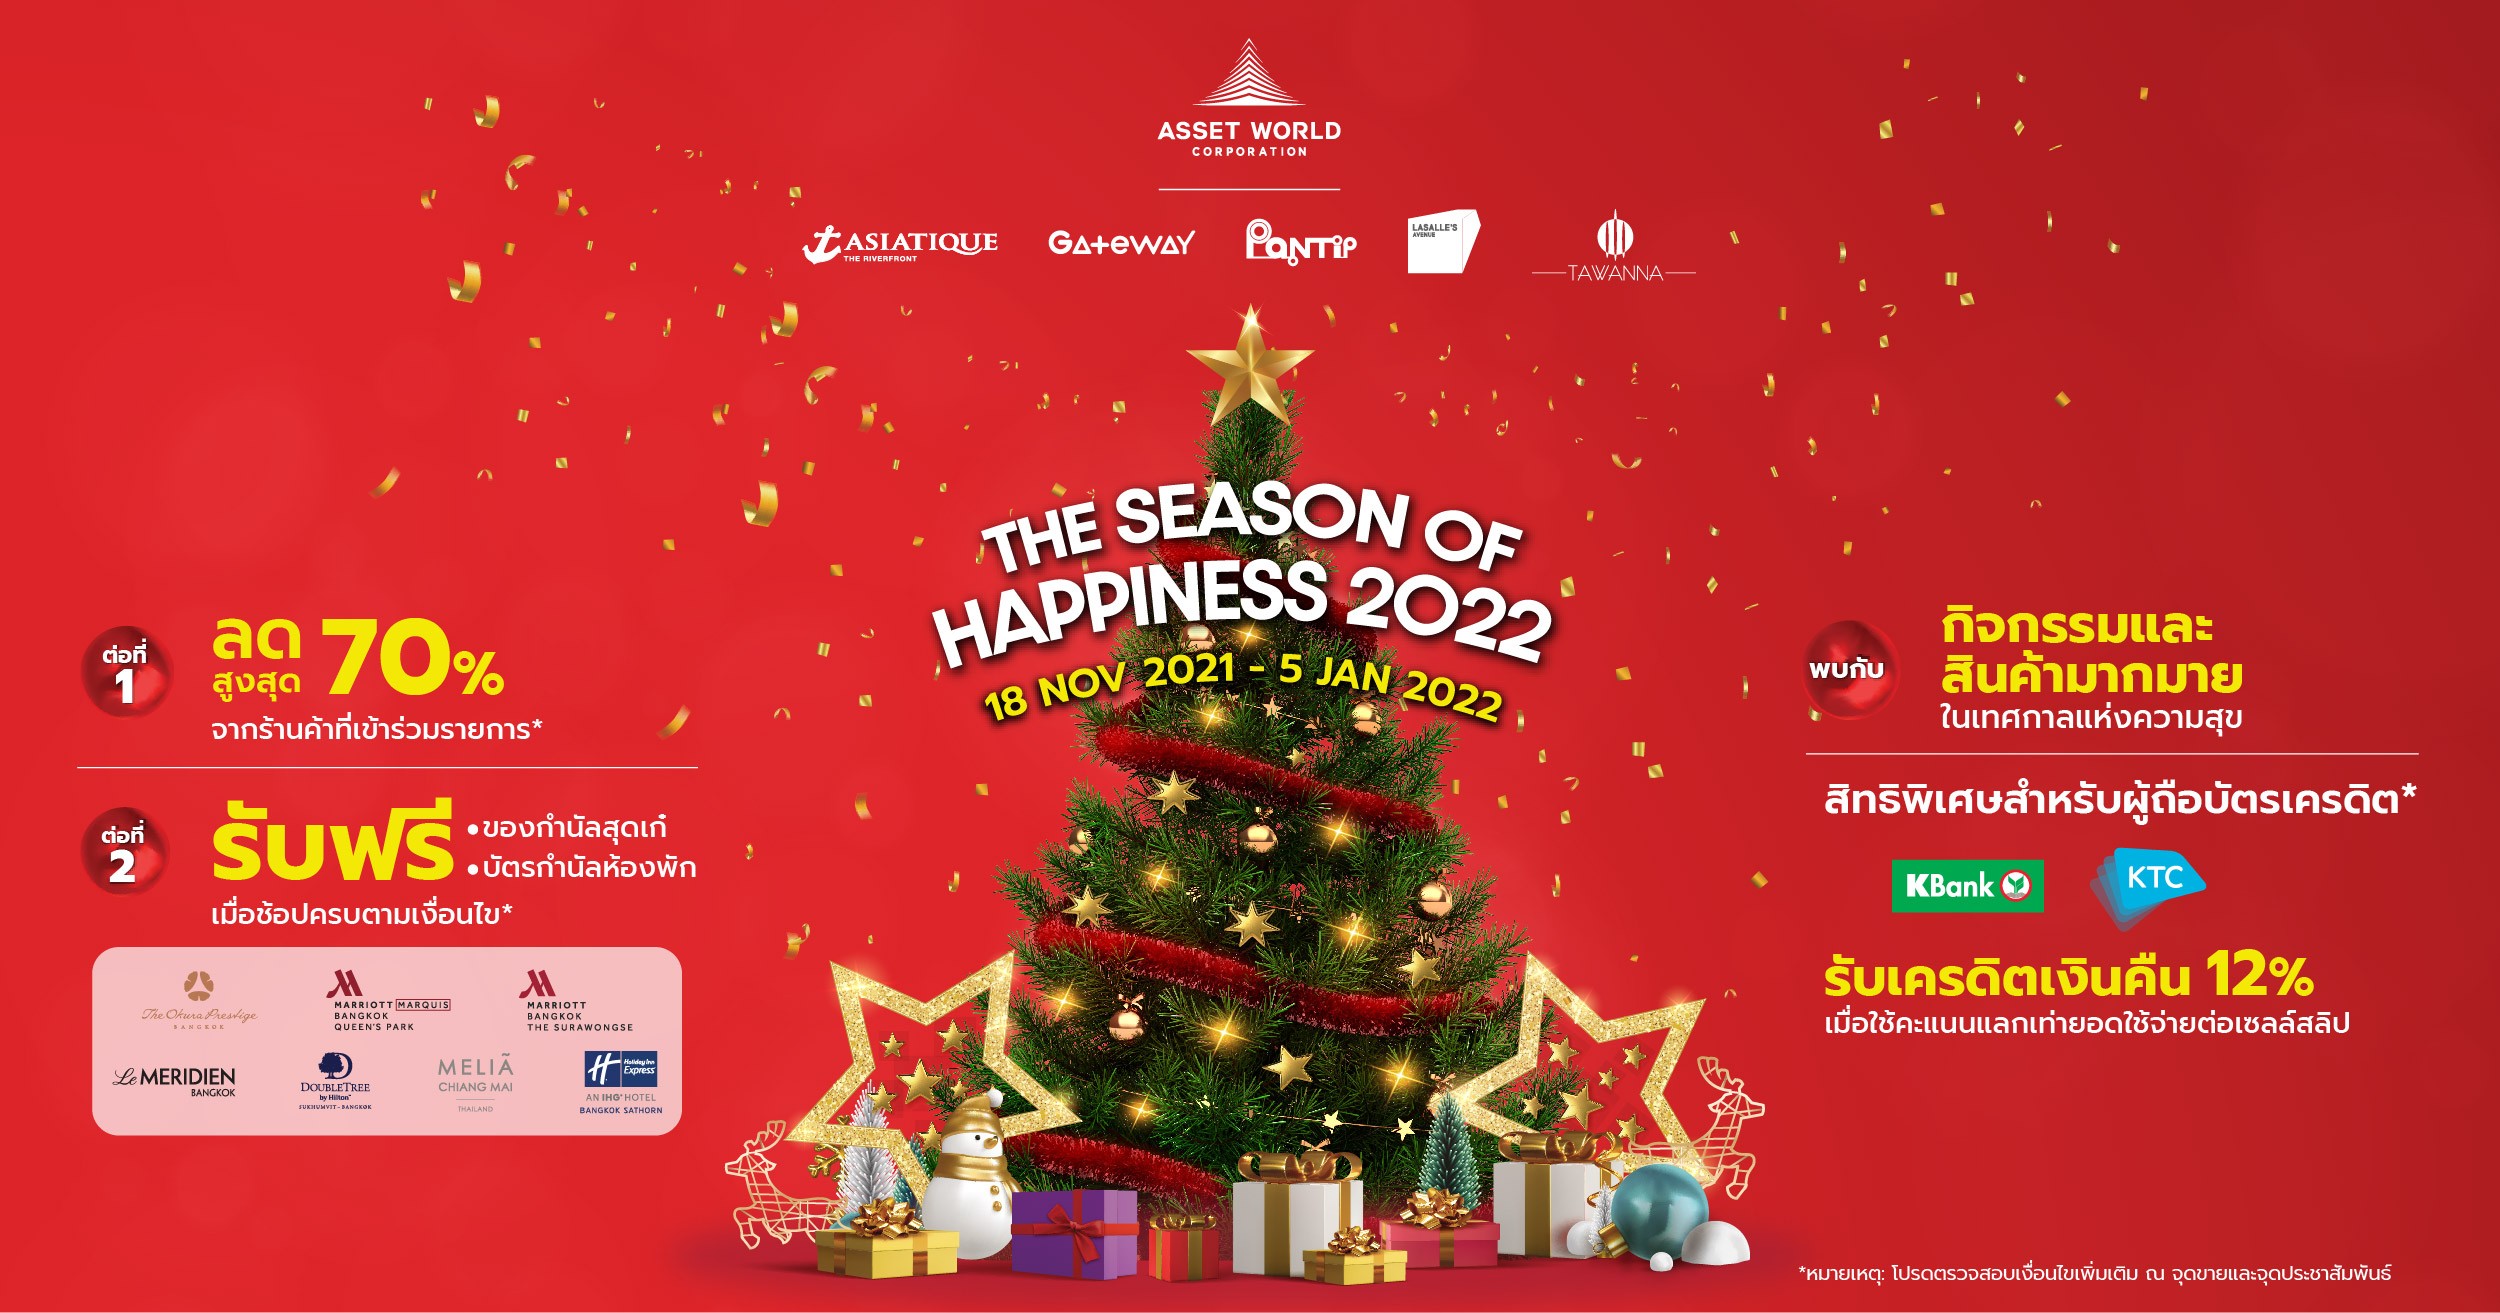 7 ศูนย์การค้าใหญ่ใจกลางเมืองของ AWC ร่วมส่งมอบความสุขส่งท้ายปี  “The Season of Happiness 2022” ฉลองความสนุกเทศกาลต้อนรับปีใหม่ พร้อมหนุนเปิดประเทศ รับขาช้อปสิ้นปี